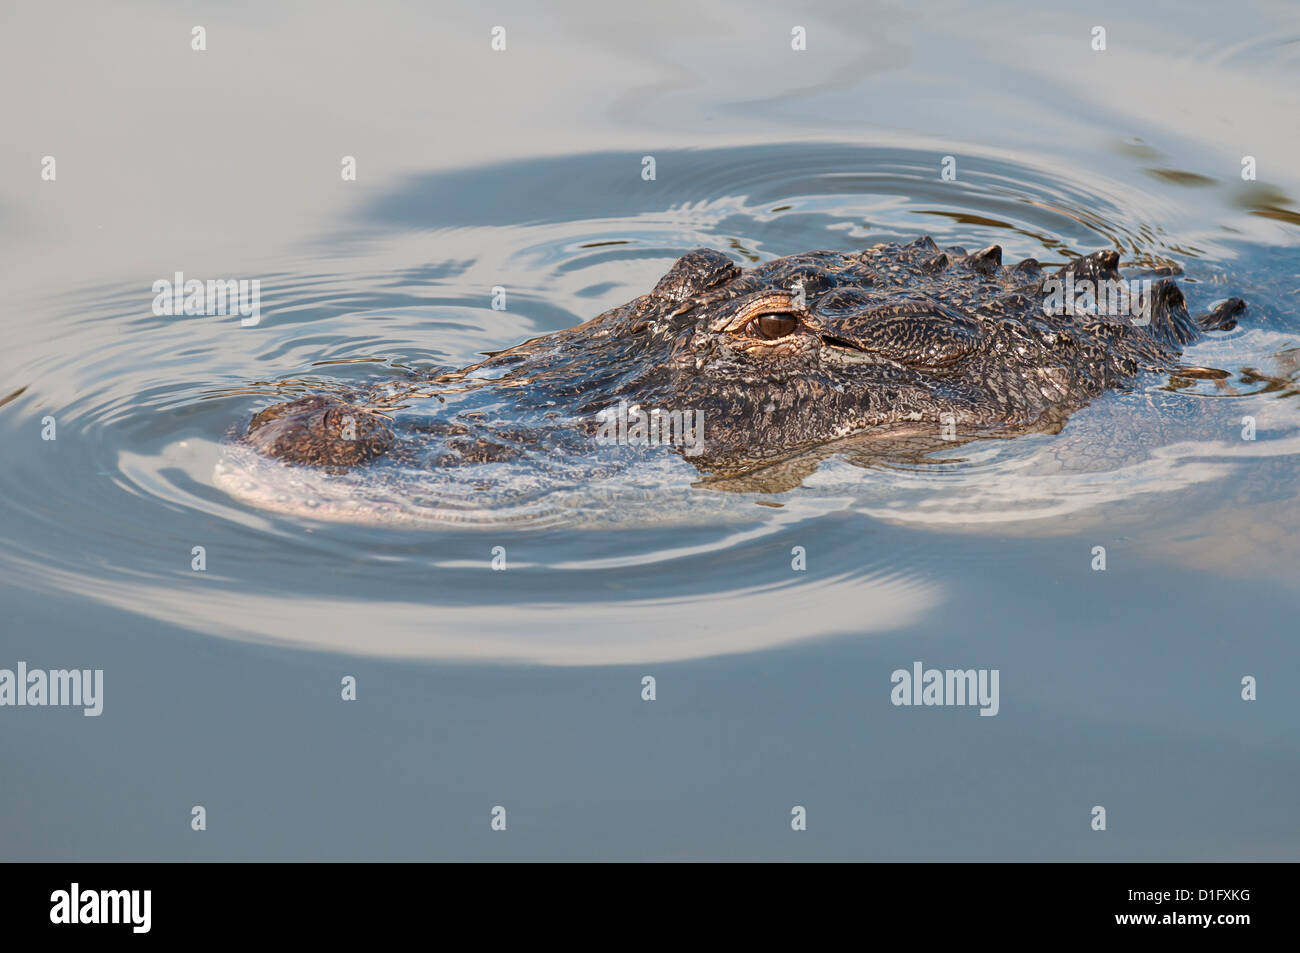 Il coccodrillo americano (Alligator mississippiensis), Everglades, Florida, Stati Uniti d'America, America del Nord Foto Stock